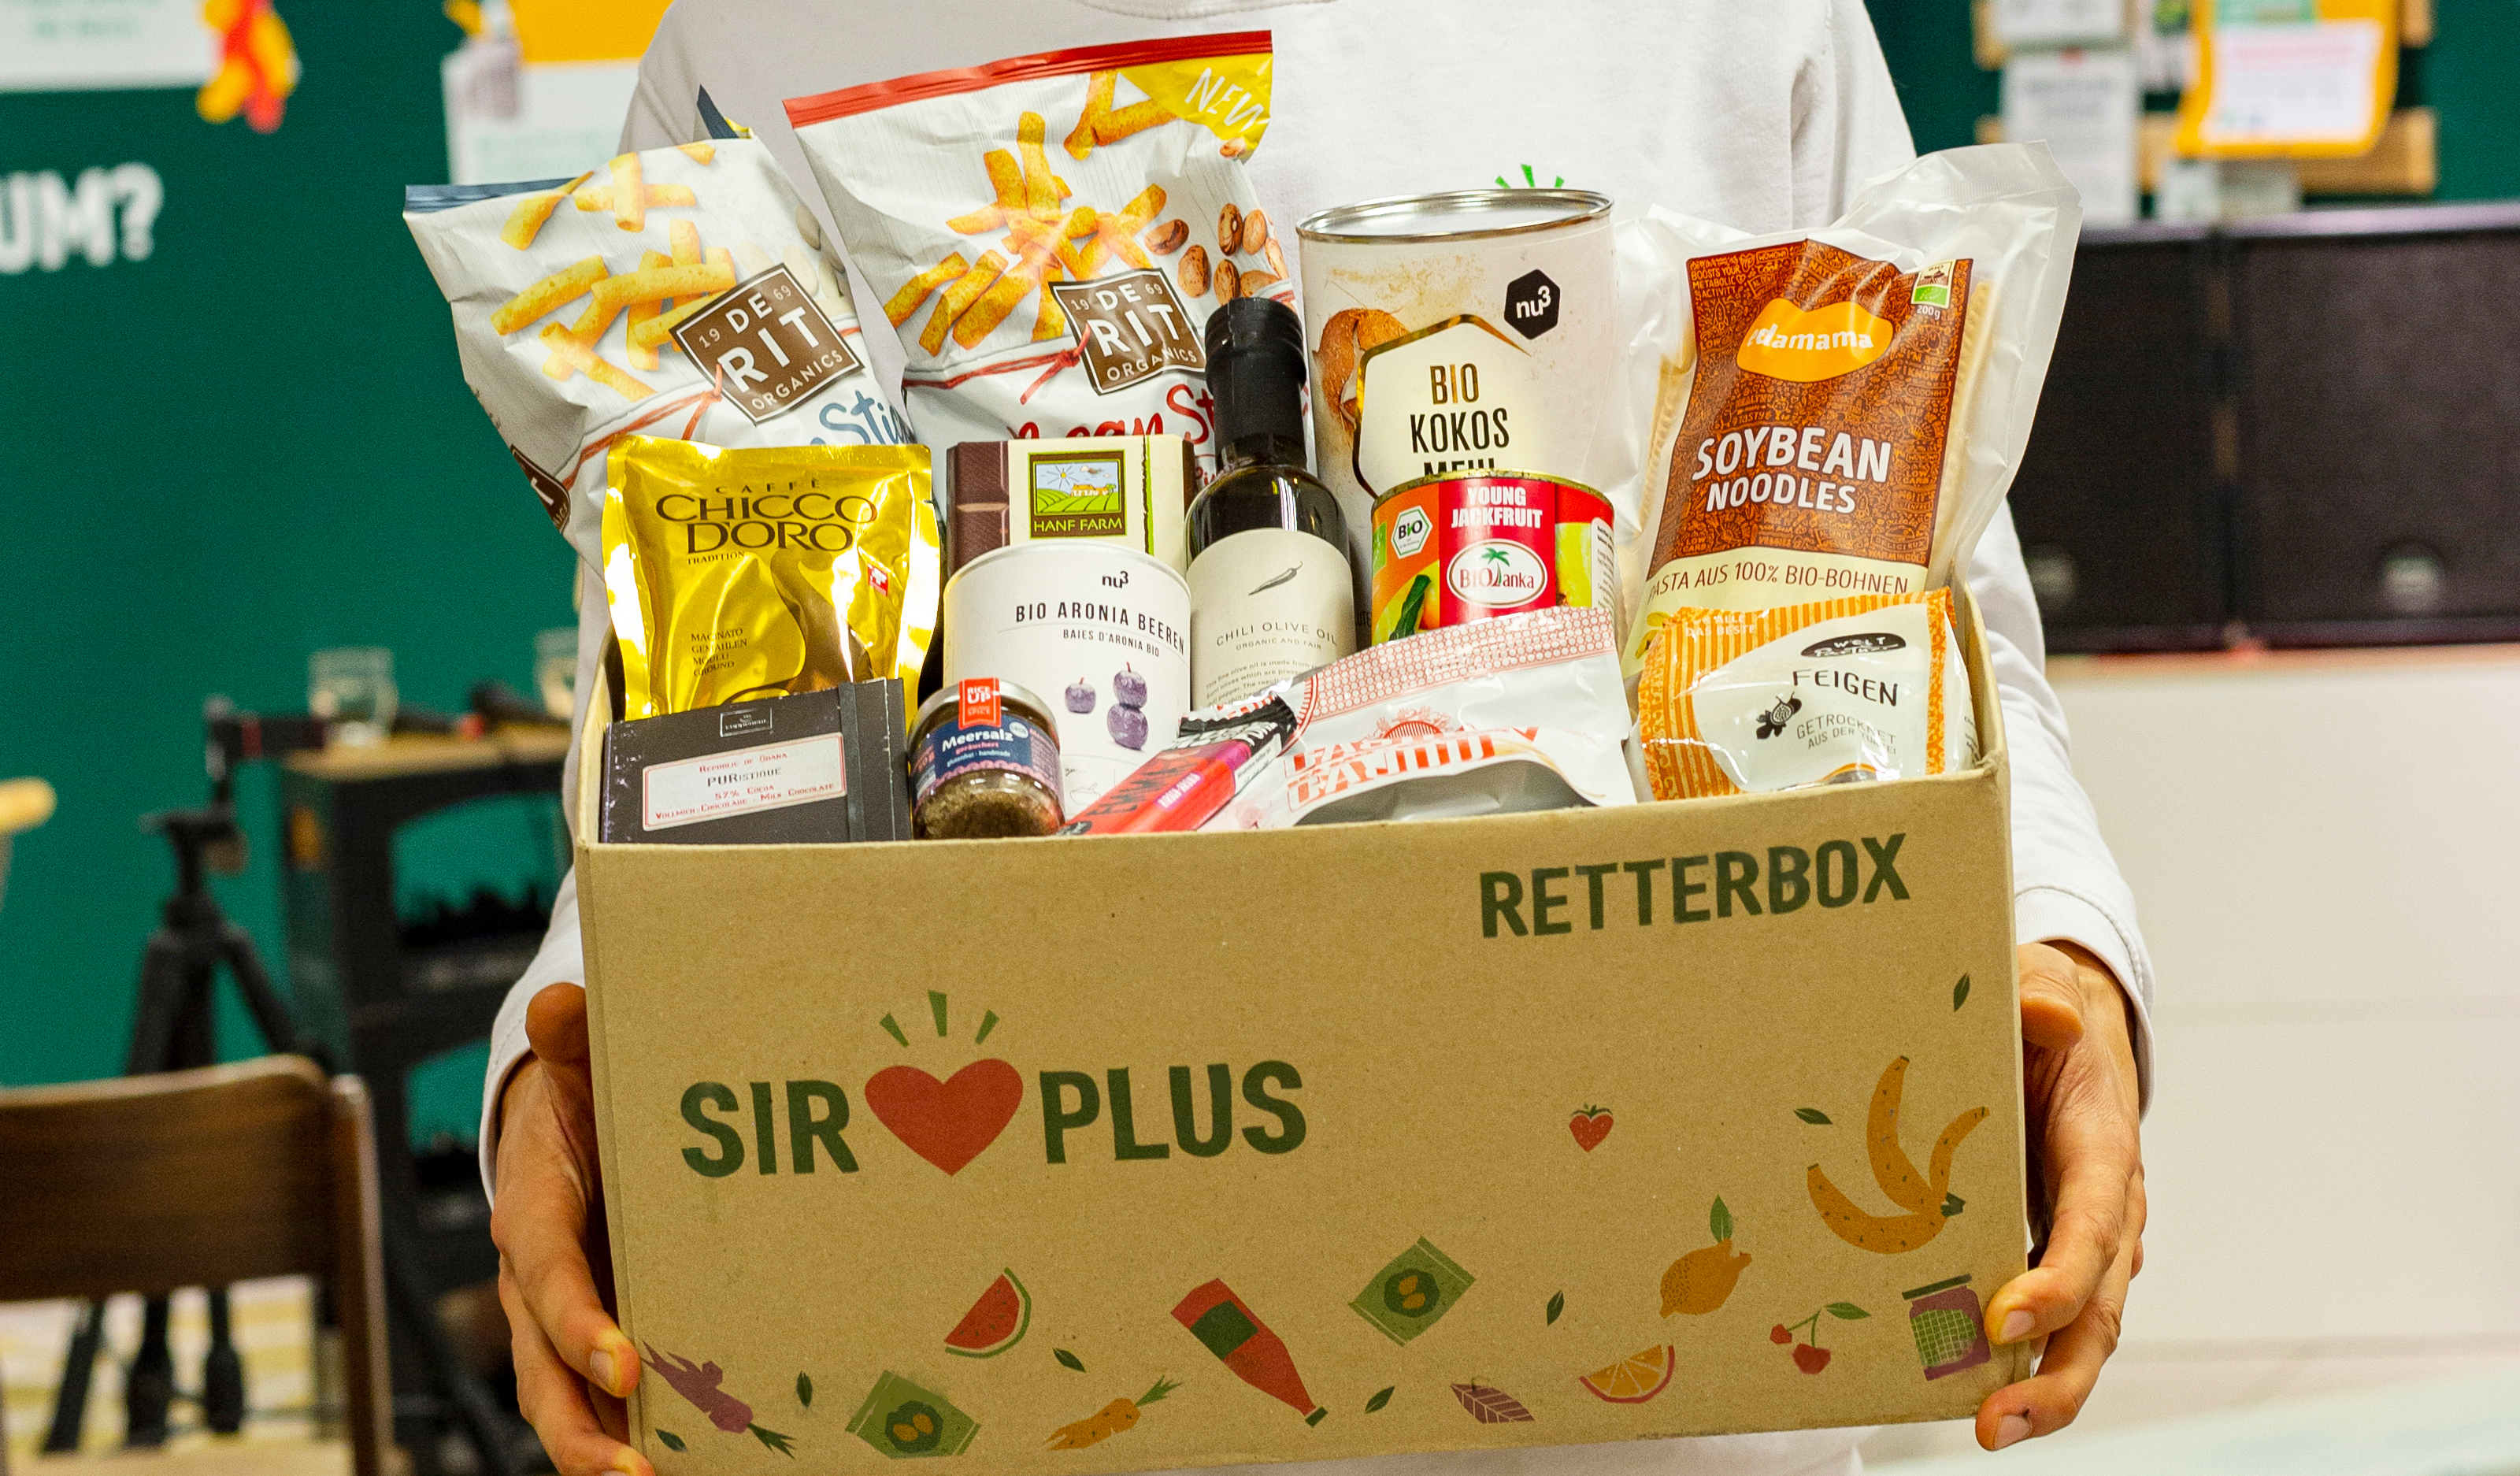 Die Retterbox von Sirplusist bis oben hin gefüllt mit allerlei Lebensmittelverpackungen.